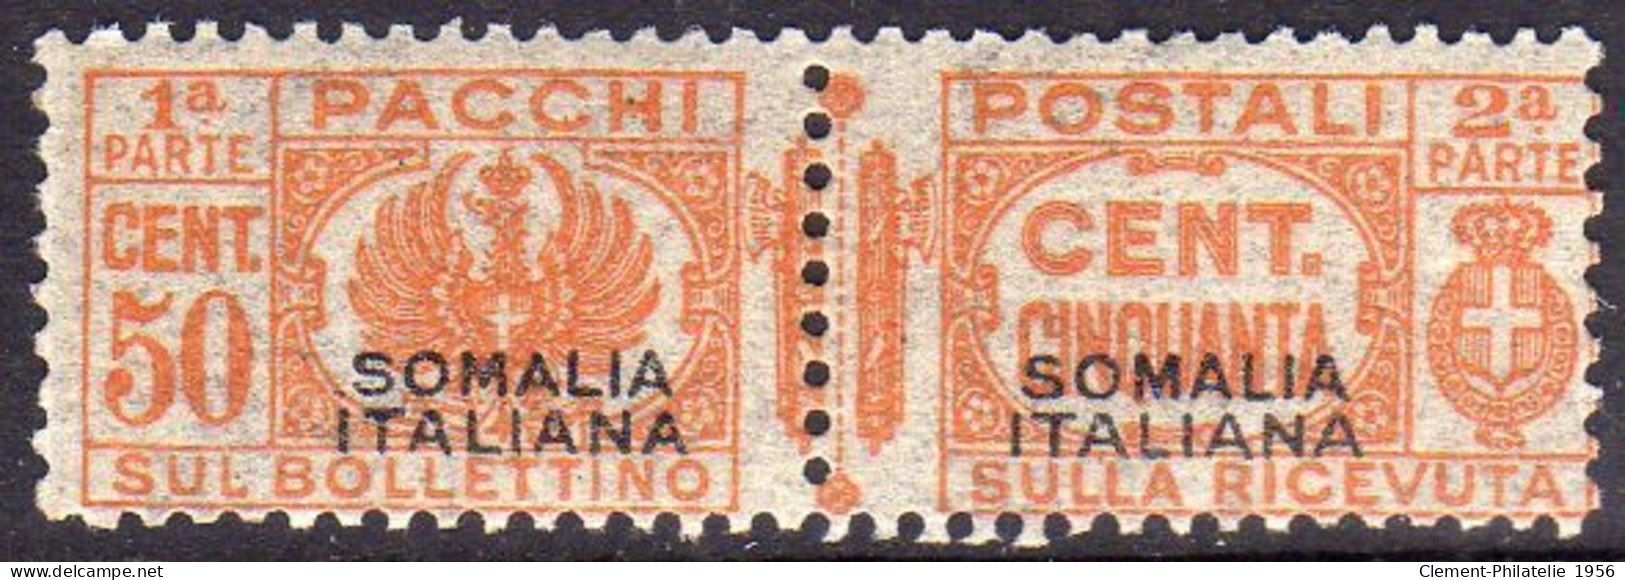 SOMALIE 1928 - 1941 LISTE DE COLIS POSTAUX COLIS POSTAUX SURIMPRESSION NOIRE SURIMPRESSION NOIRE I TYPE CENT.50c MNH - Somalia